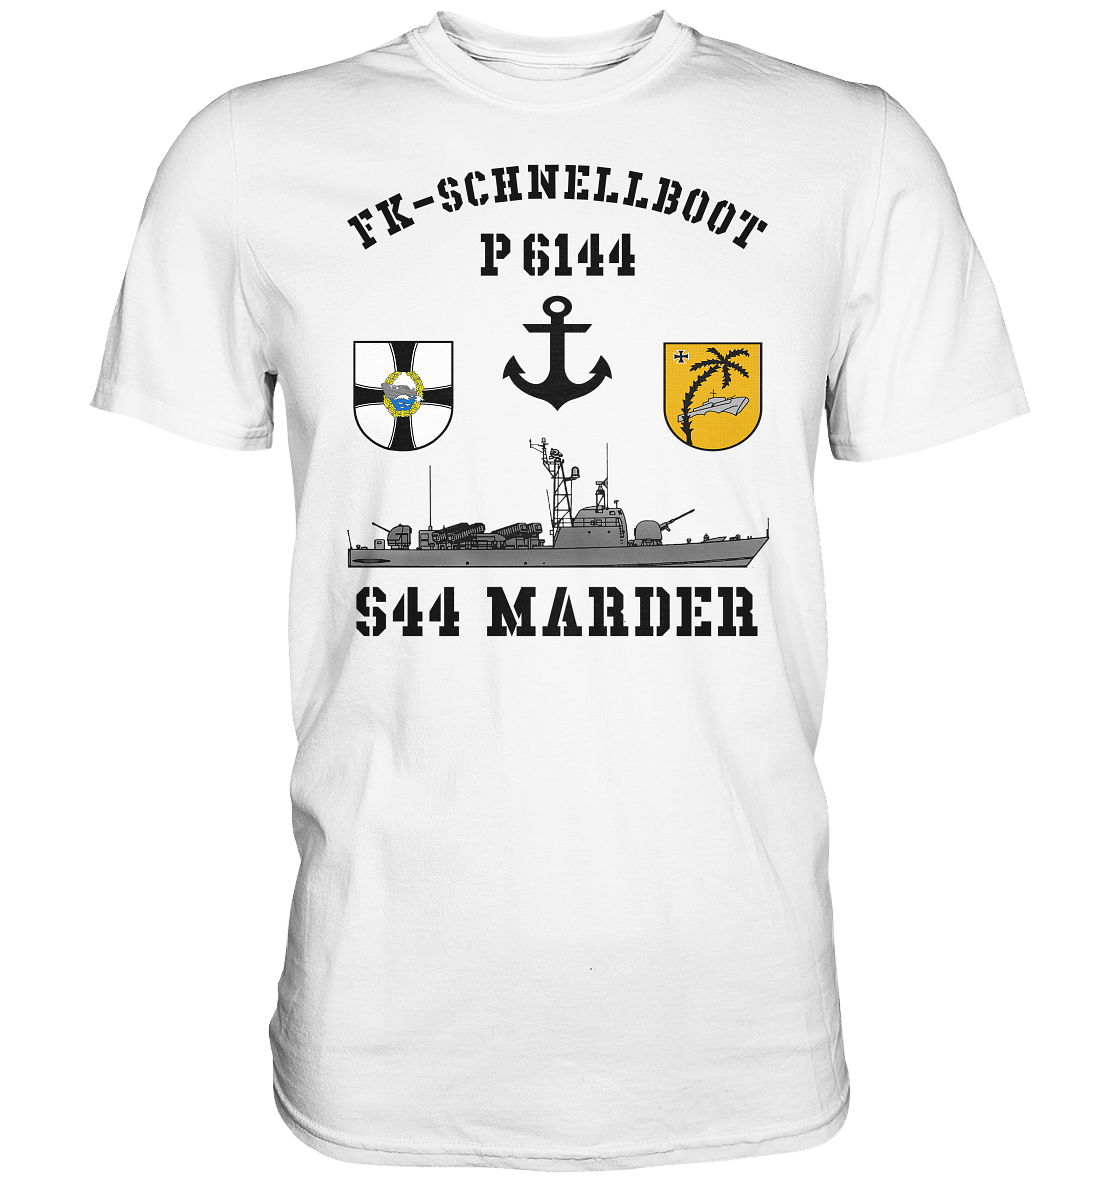 P6144 S44 MARDER - Premium Shirt